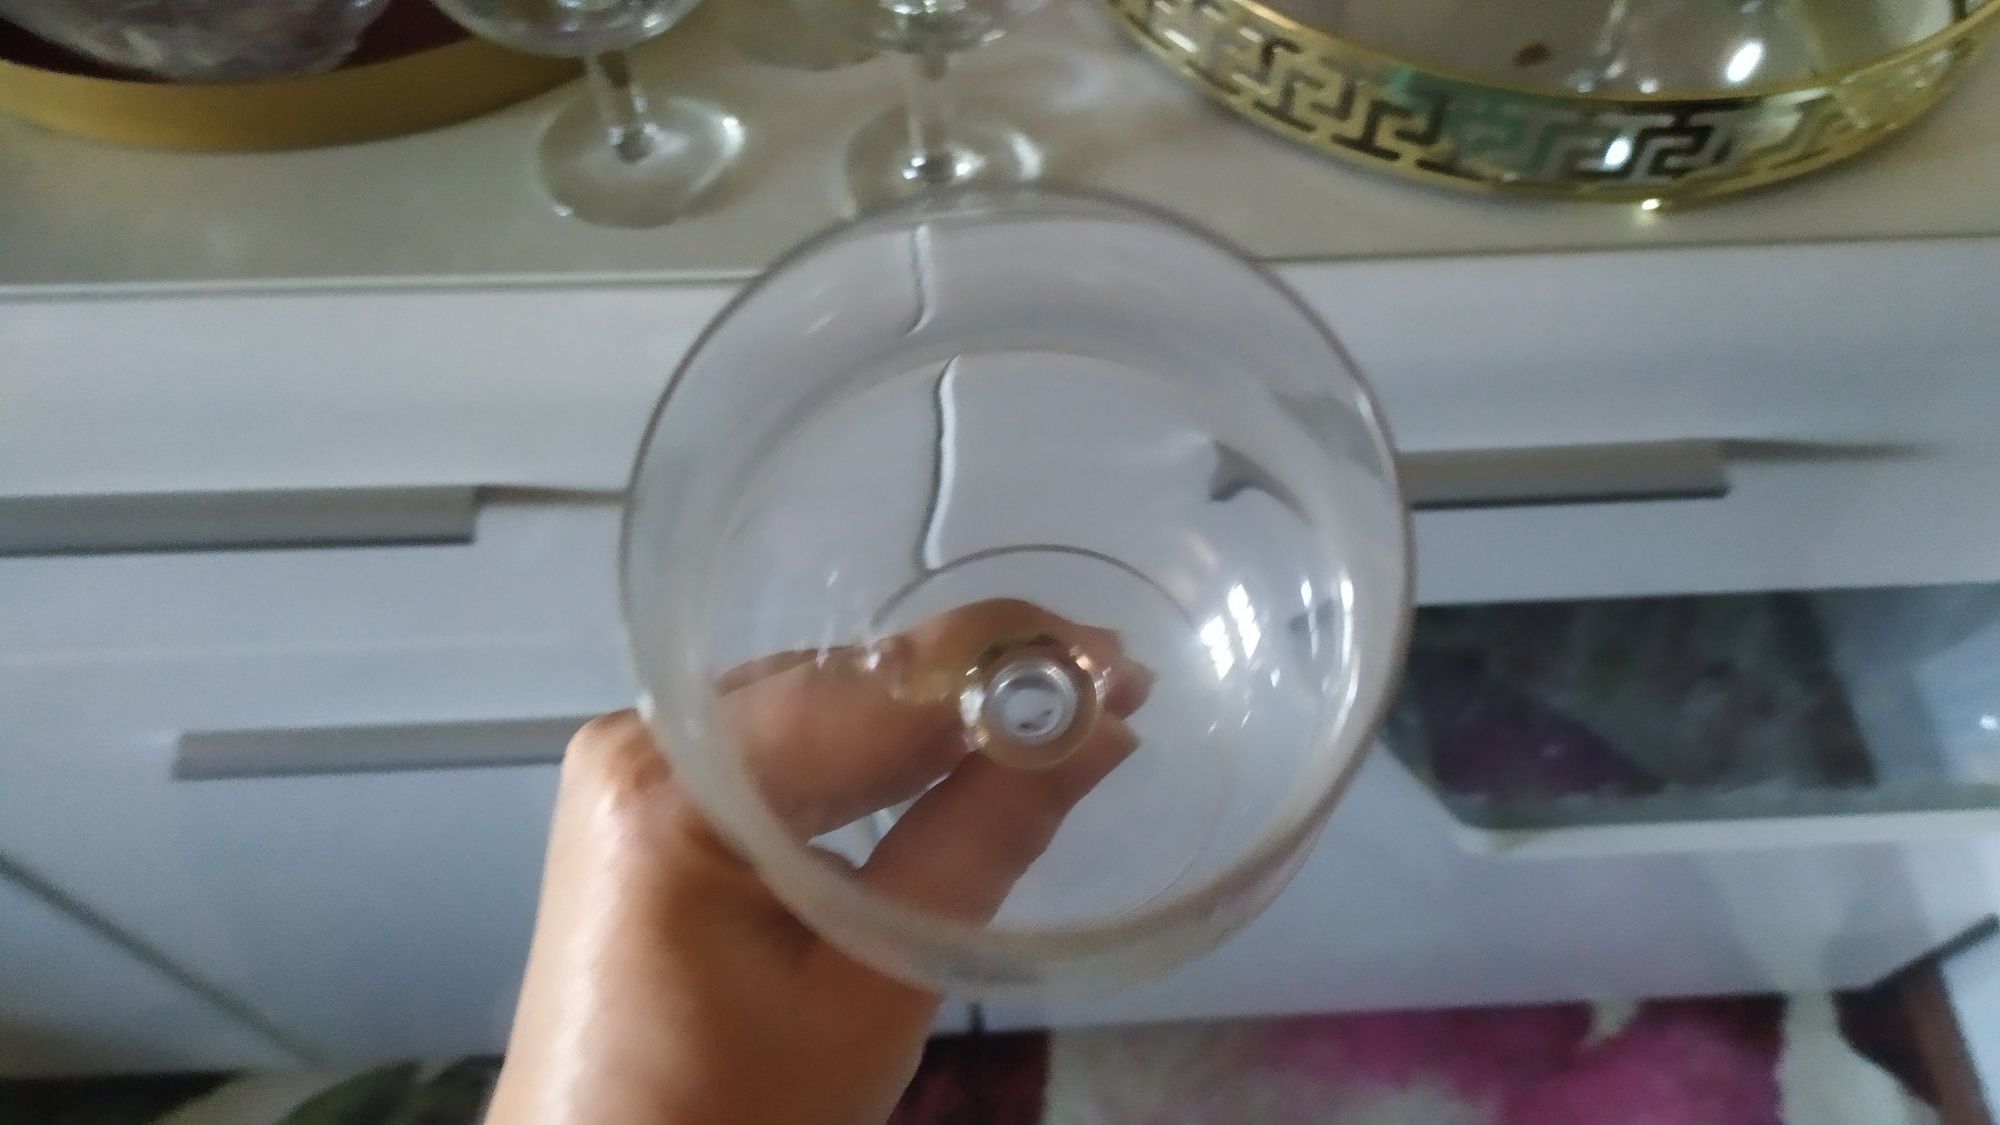 Conjunto de 6 copos cristal d'arques